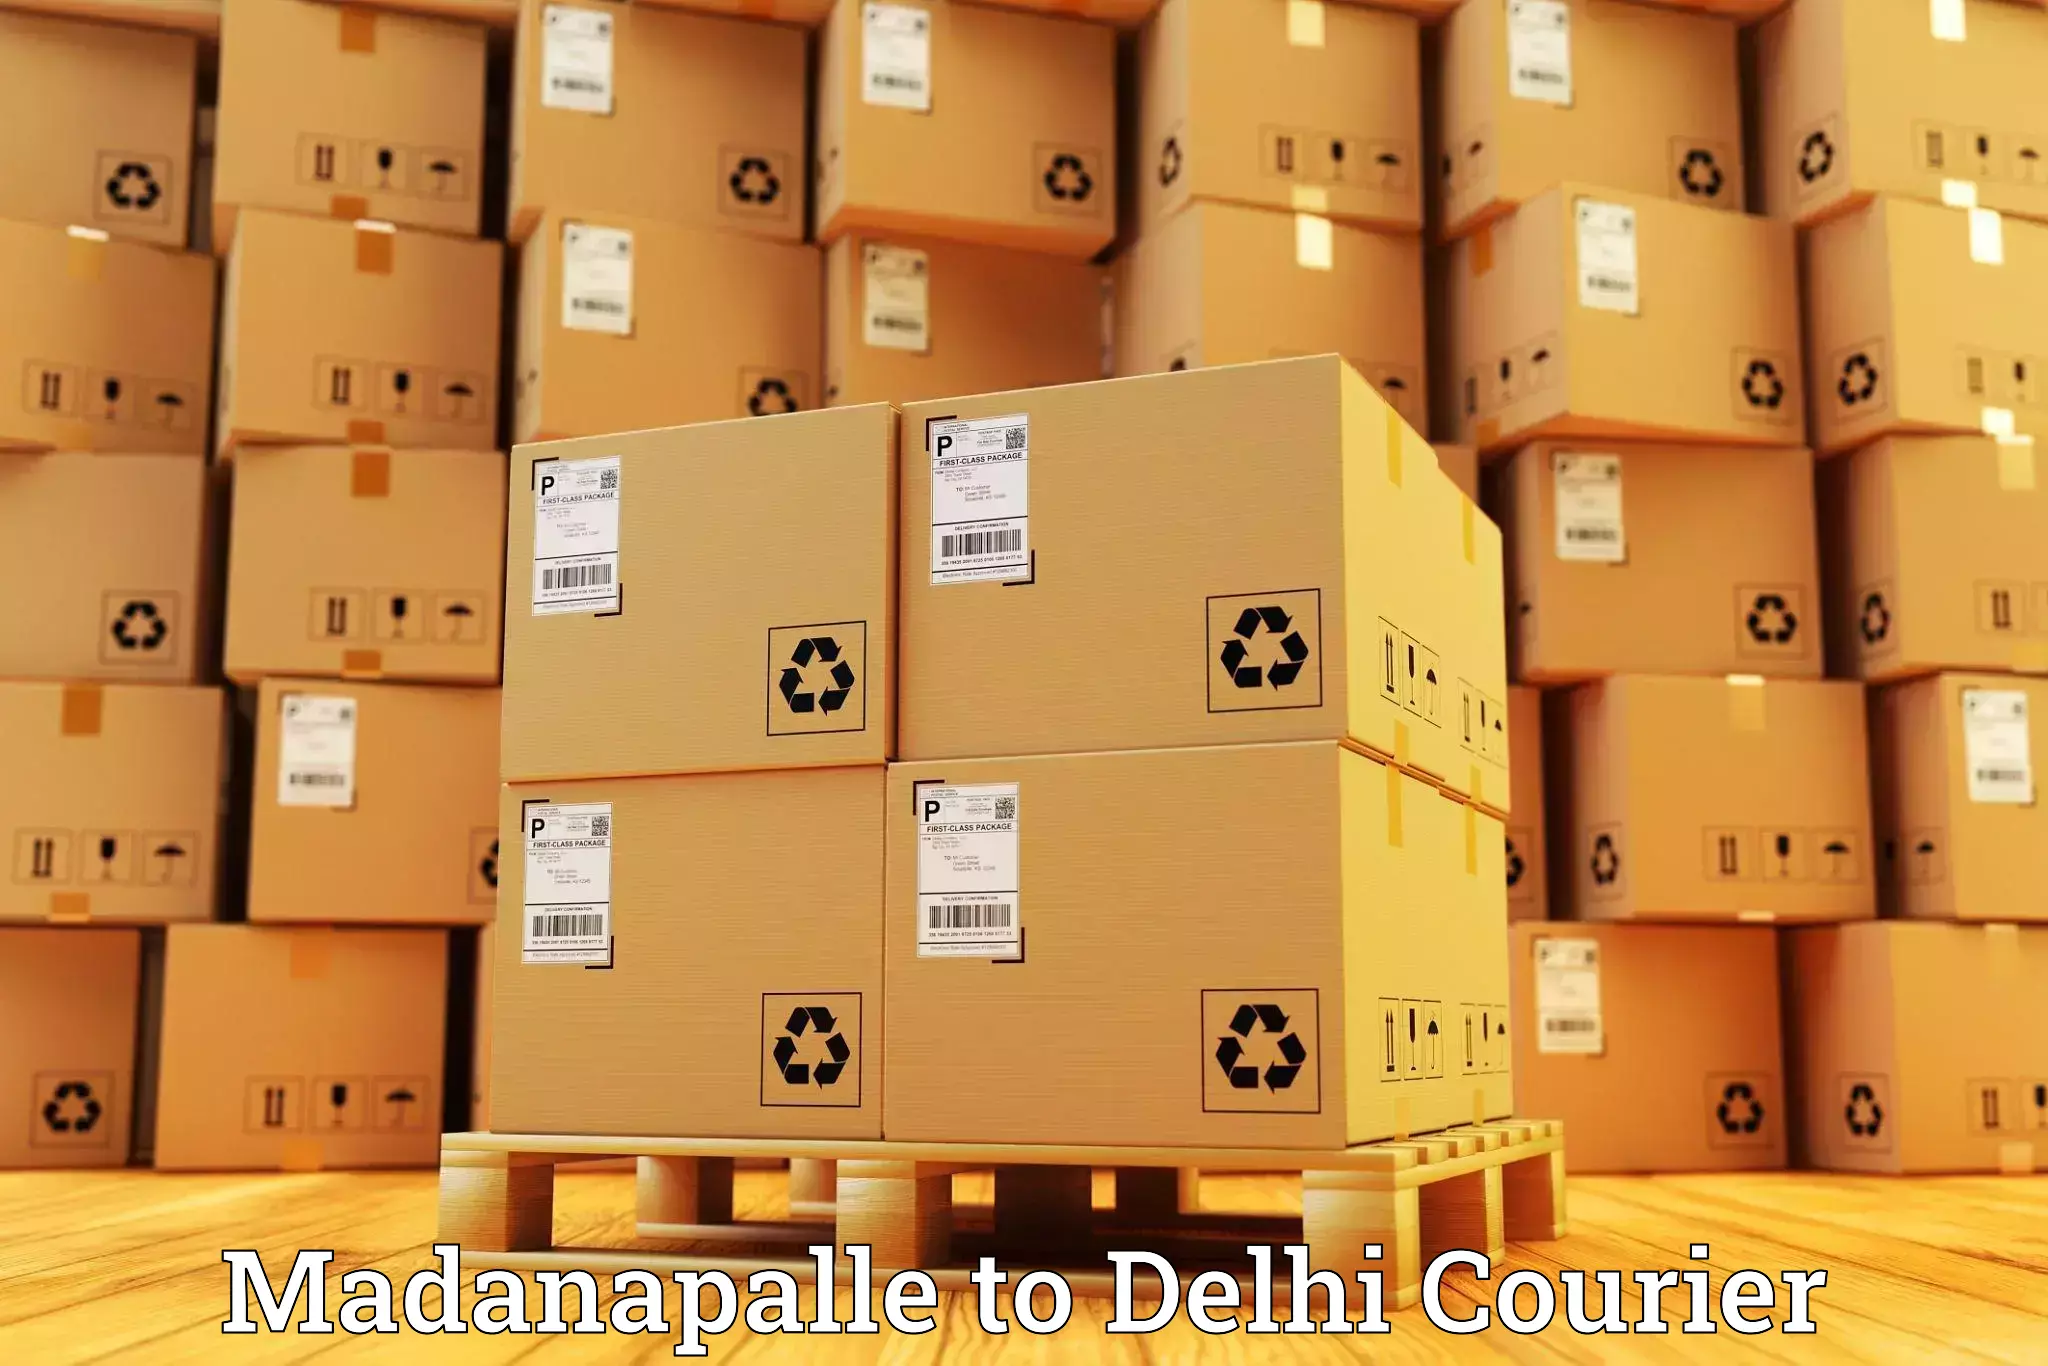 Courier service comparison Madanapalle to Jamia Millia Islamia New Delhi